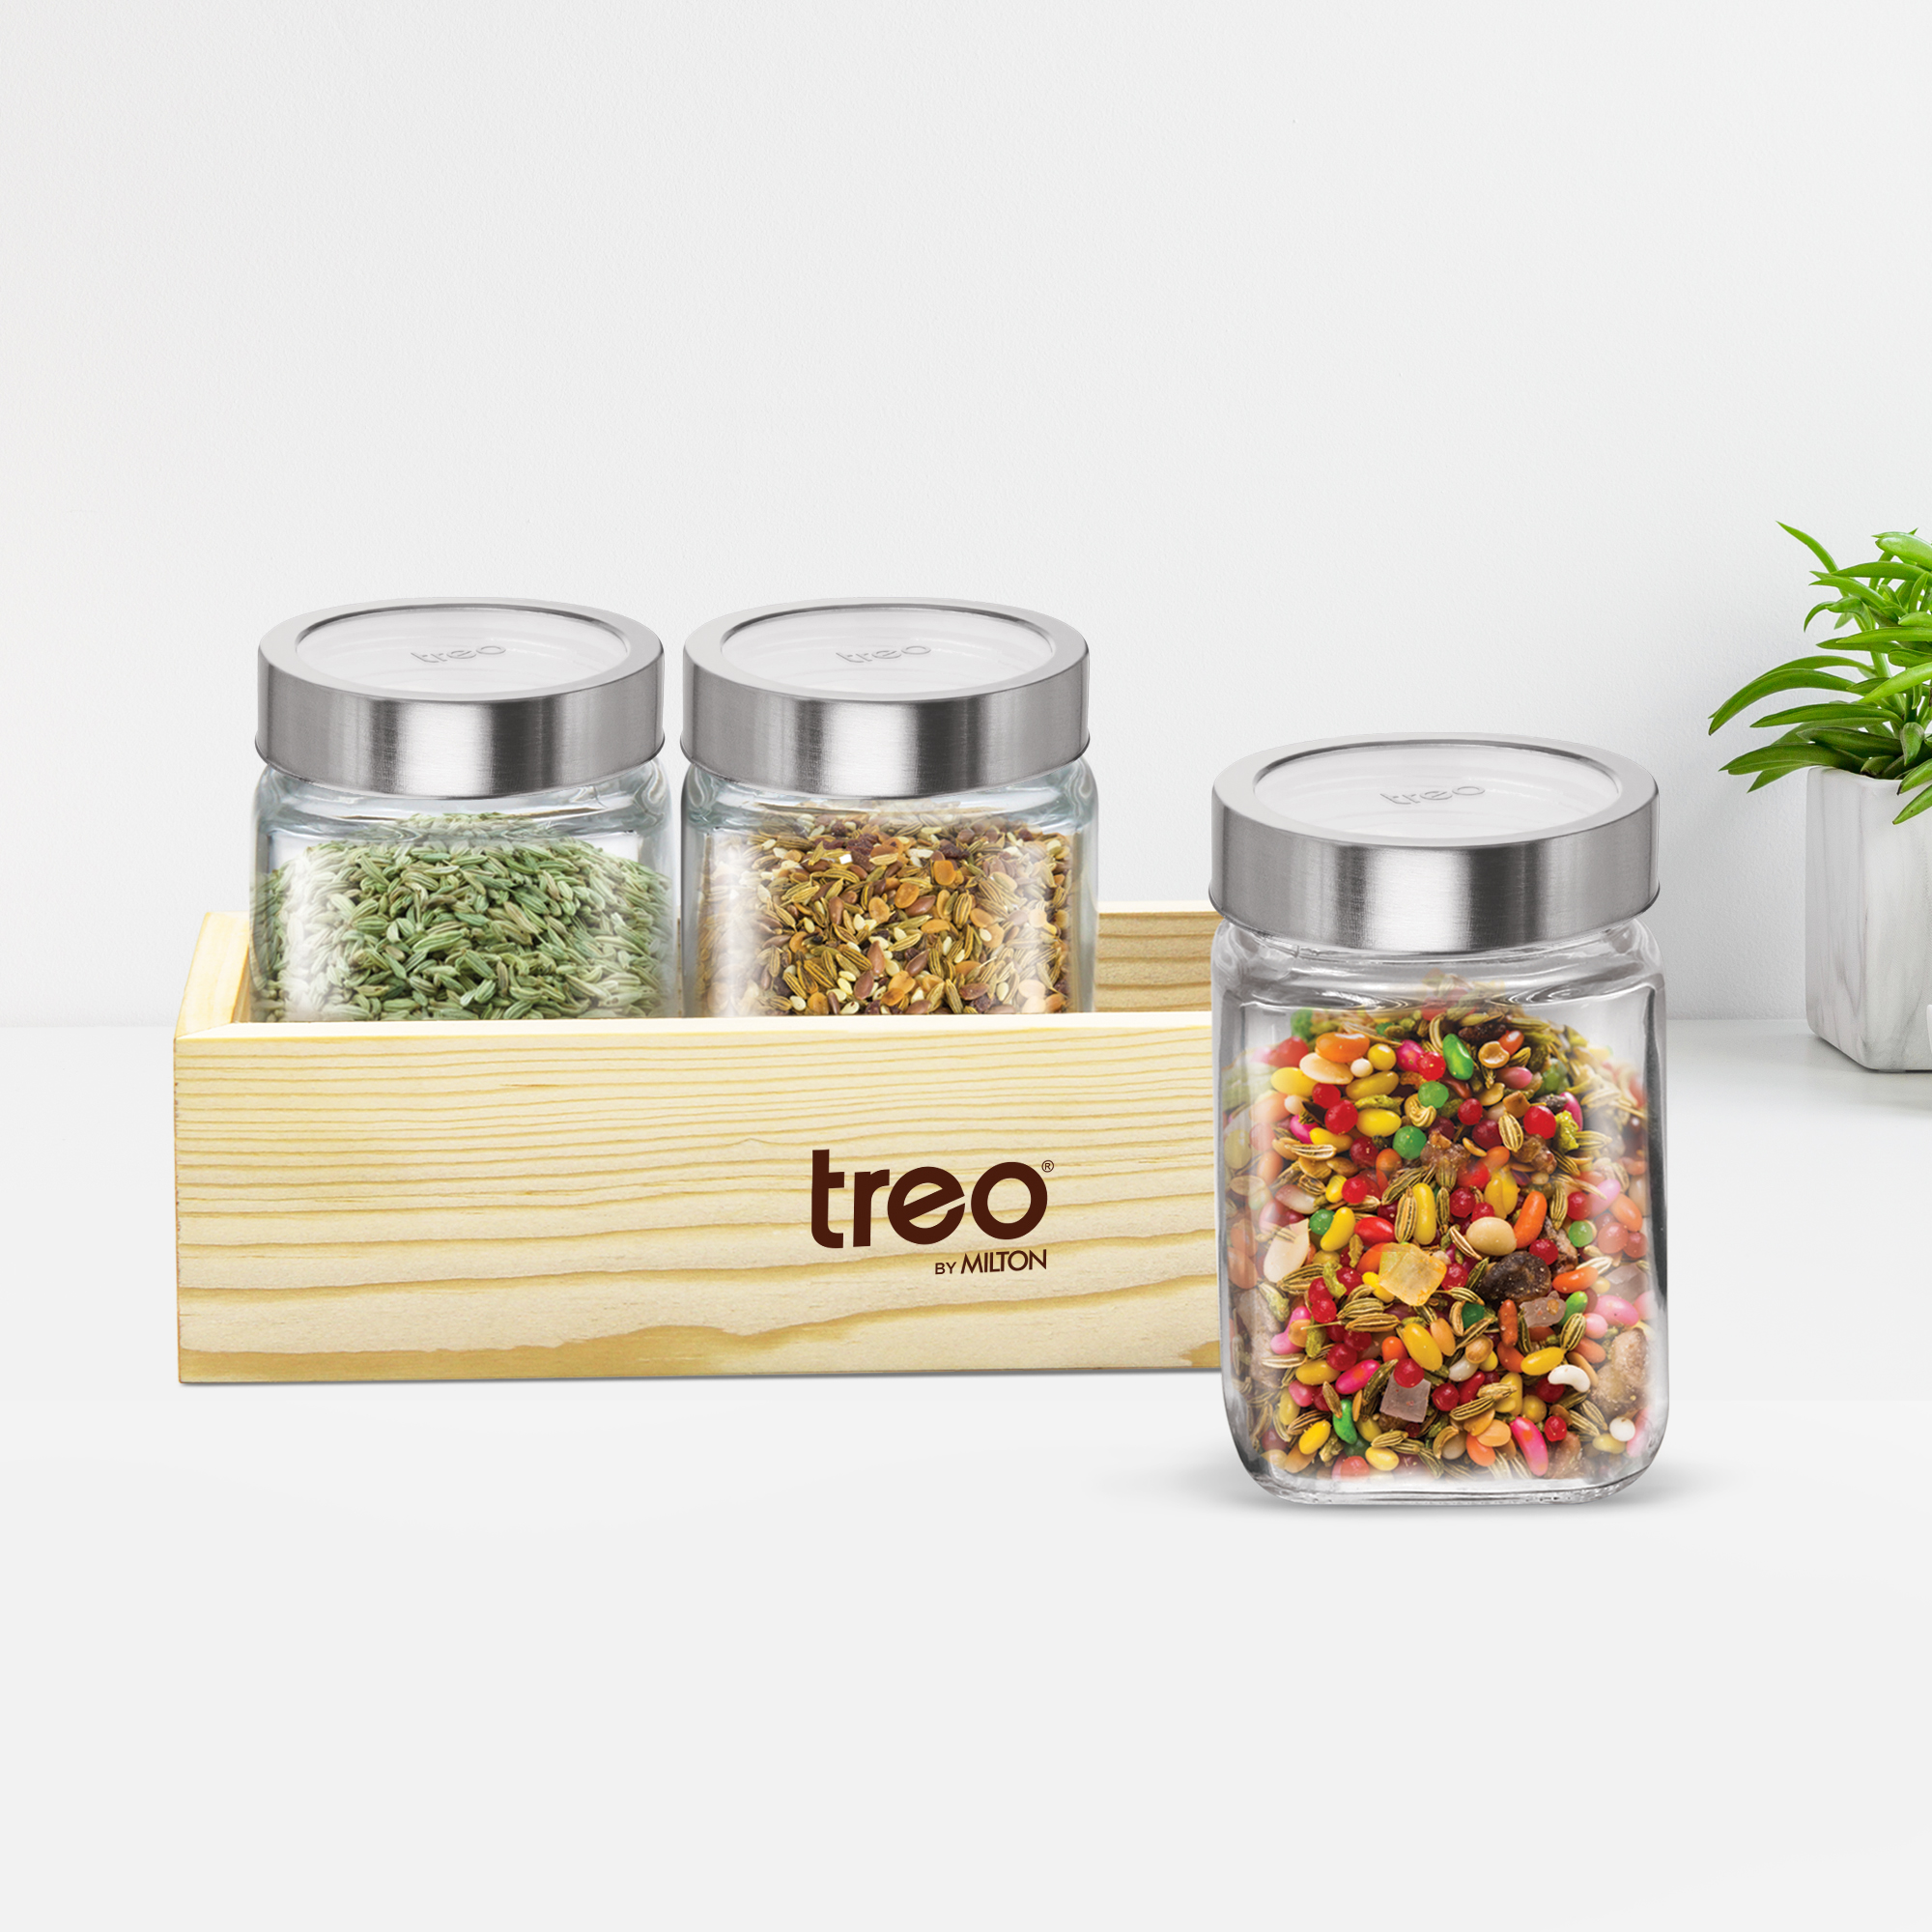 Spice Jars - Buy Glass Spice Jars Online - Treo by Milton